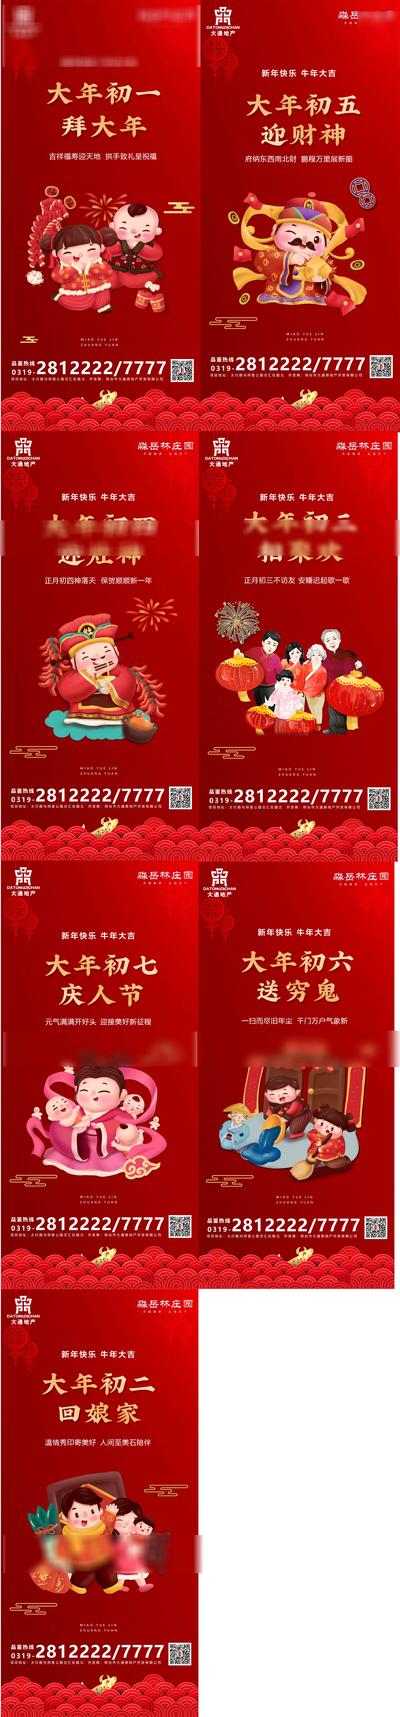 南门网 海报 春节 过年 中国传统节日 新年 年俗 初一 初七 喜庆 插画 卡通 红金